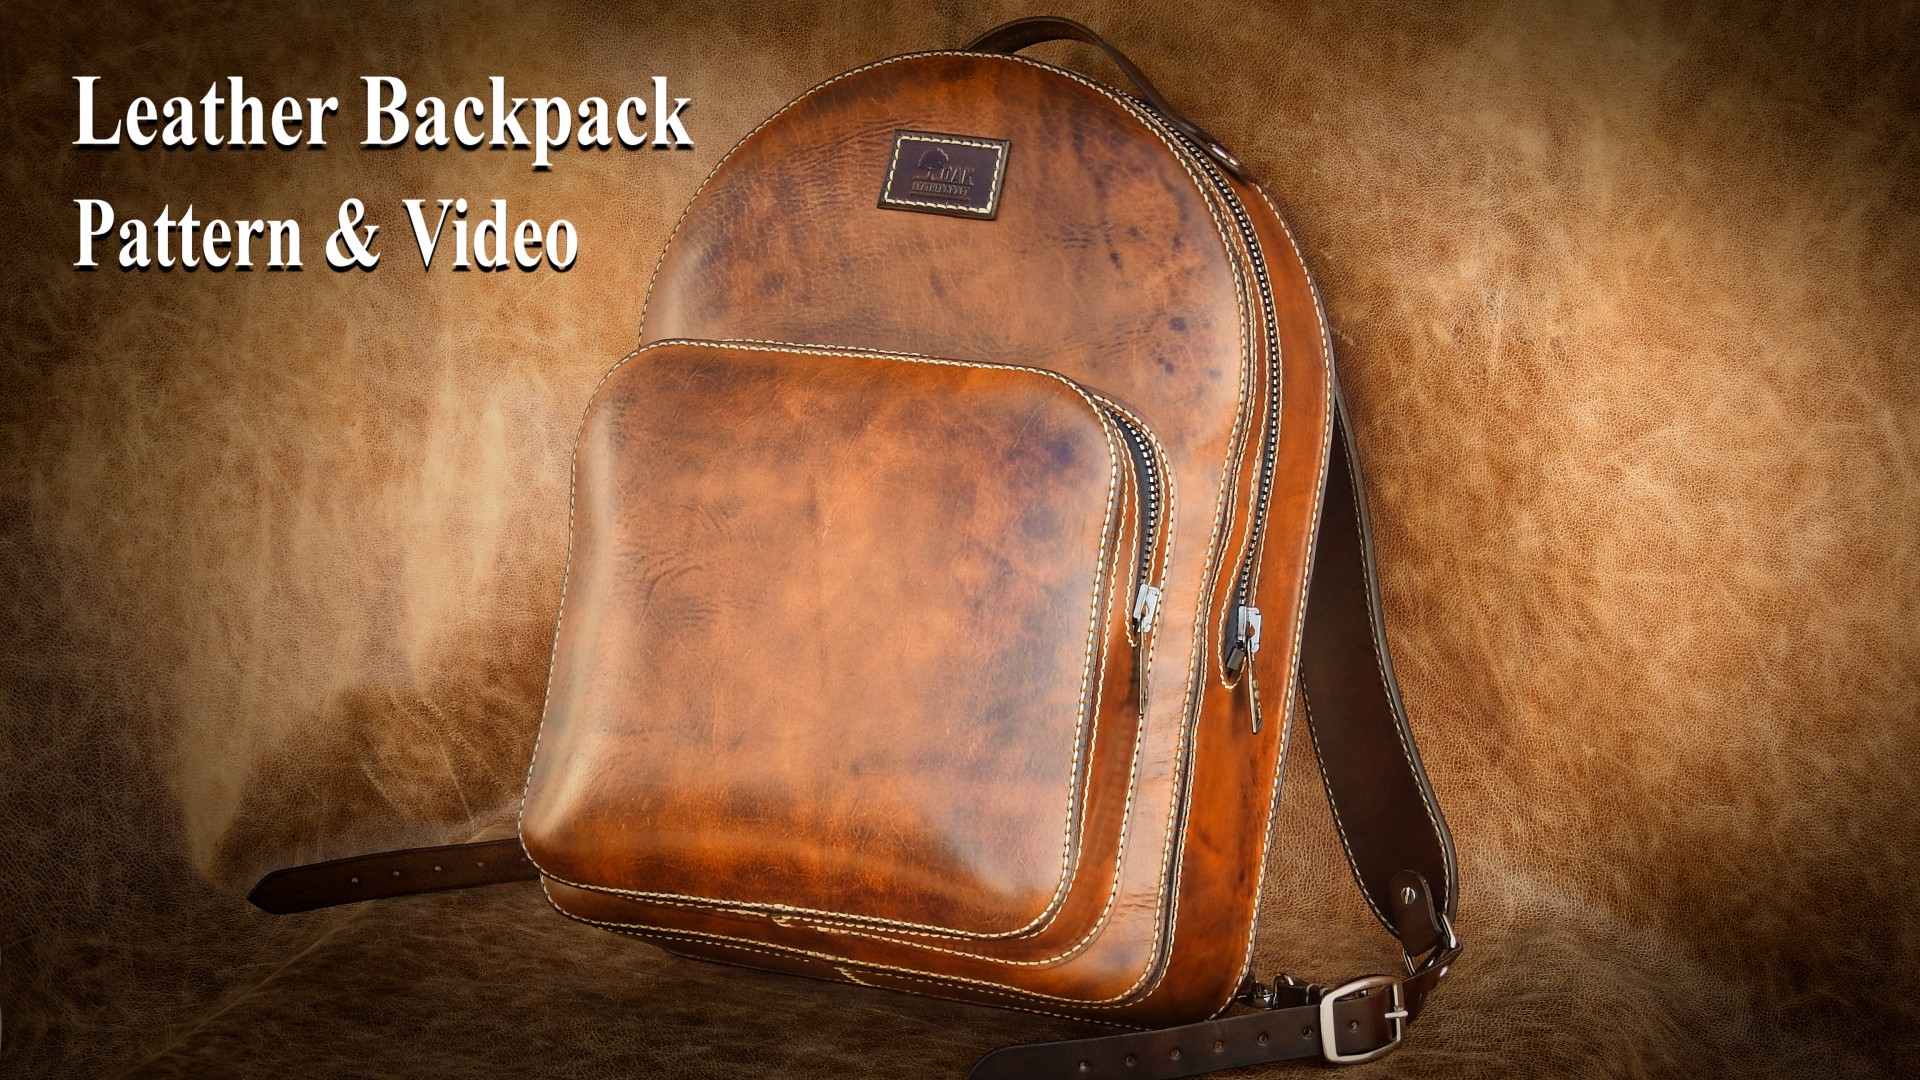 The D-Konstrukt Backpack - Backpack Pattern - Leather DIY - Pdf Download